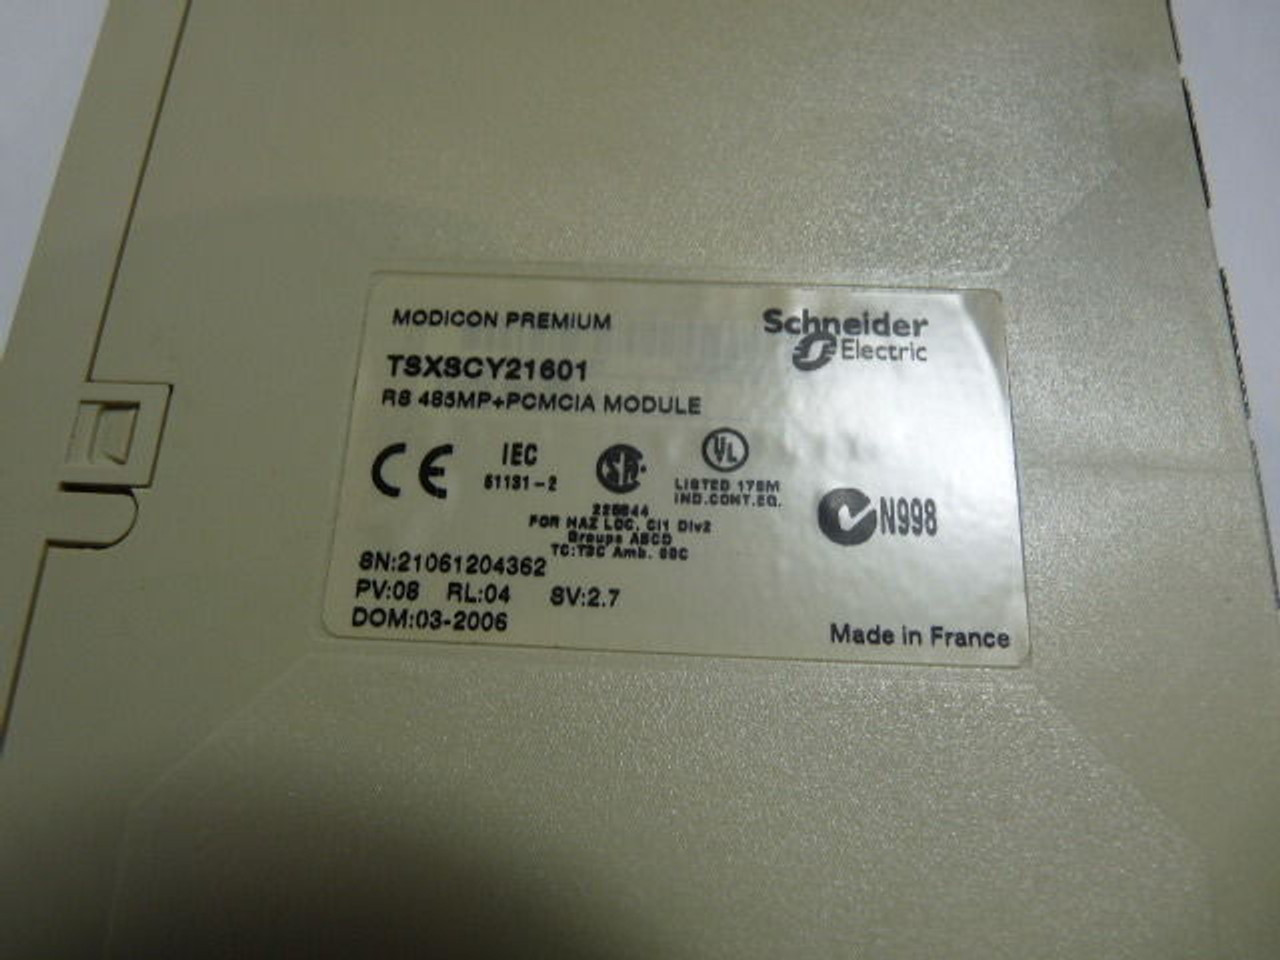 Schneider TSXSCY21601 Communication Module PV:08 RL:04 SV:2.7 USED